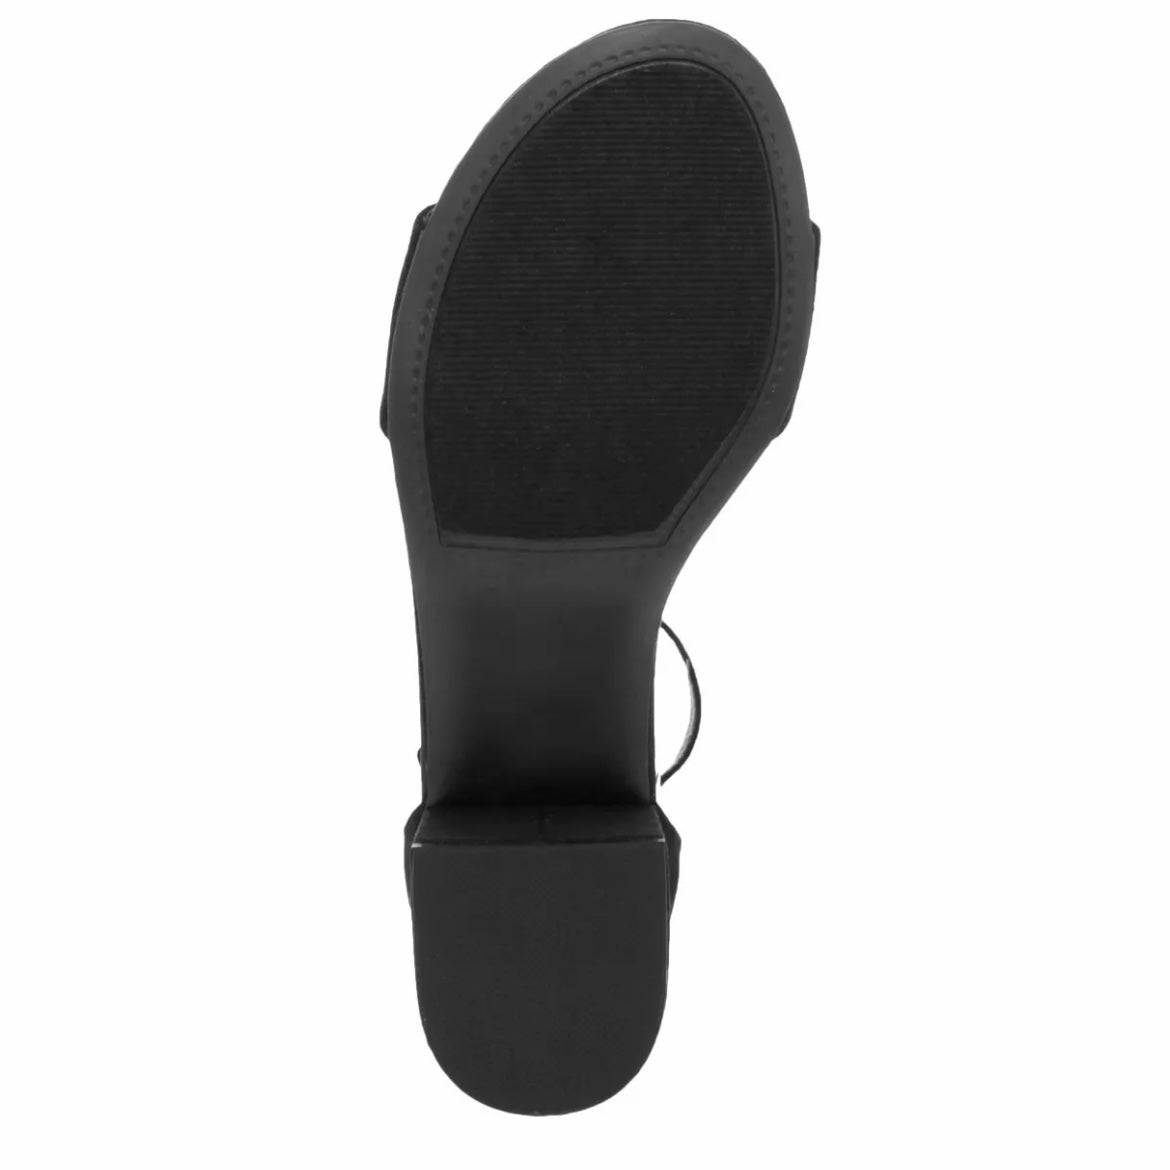 NOELLE LOW Comfort Block Heel Ankle Strap Open Toe Women's Sandals